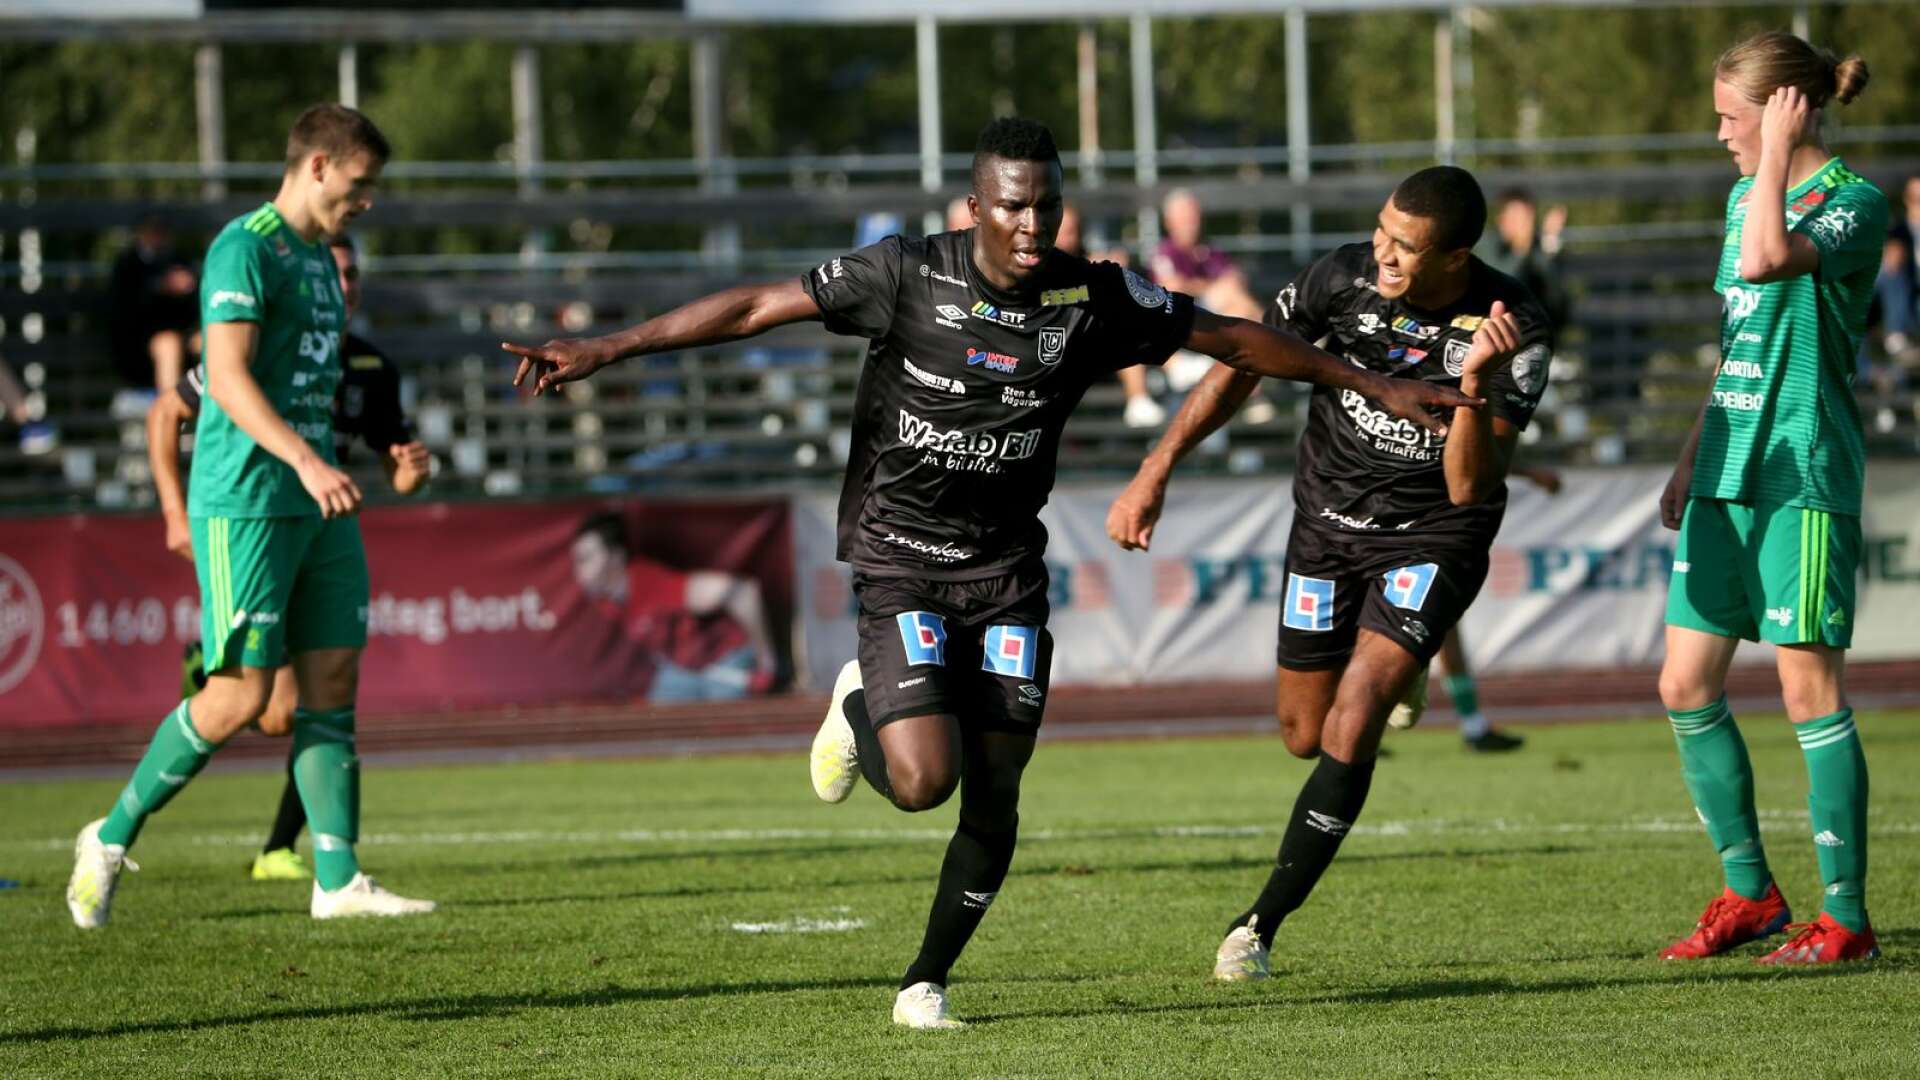 Alexis Bbakka gjorde 13 mål i Carlstad United den gångna säsongen. Men det är högst oklart om han följer med i det nybildade division 1-laget.